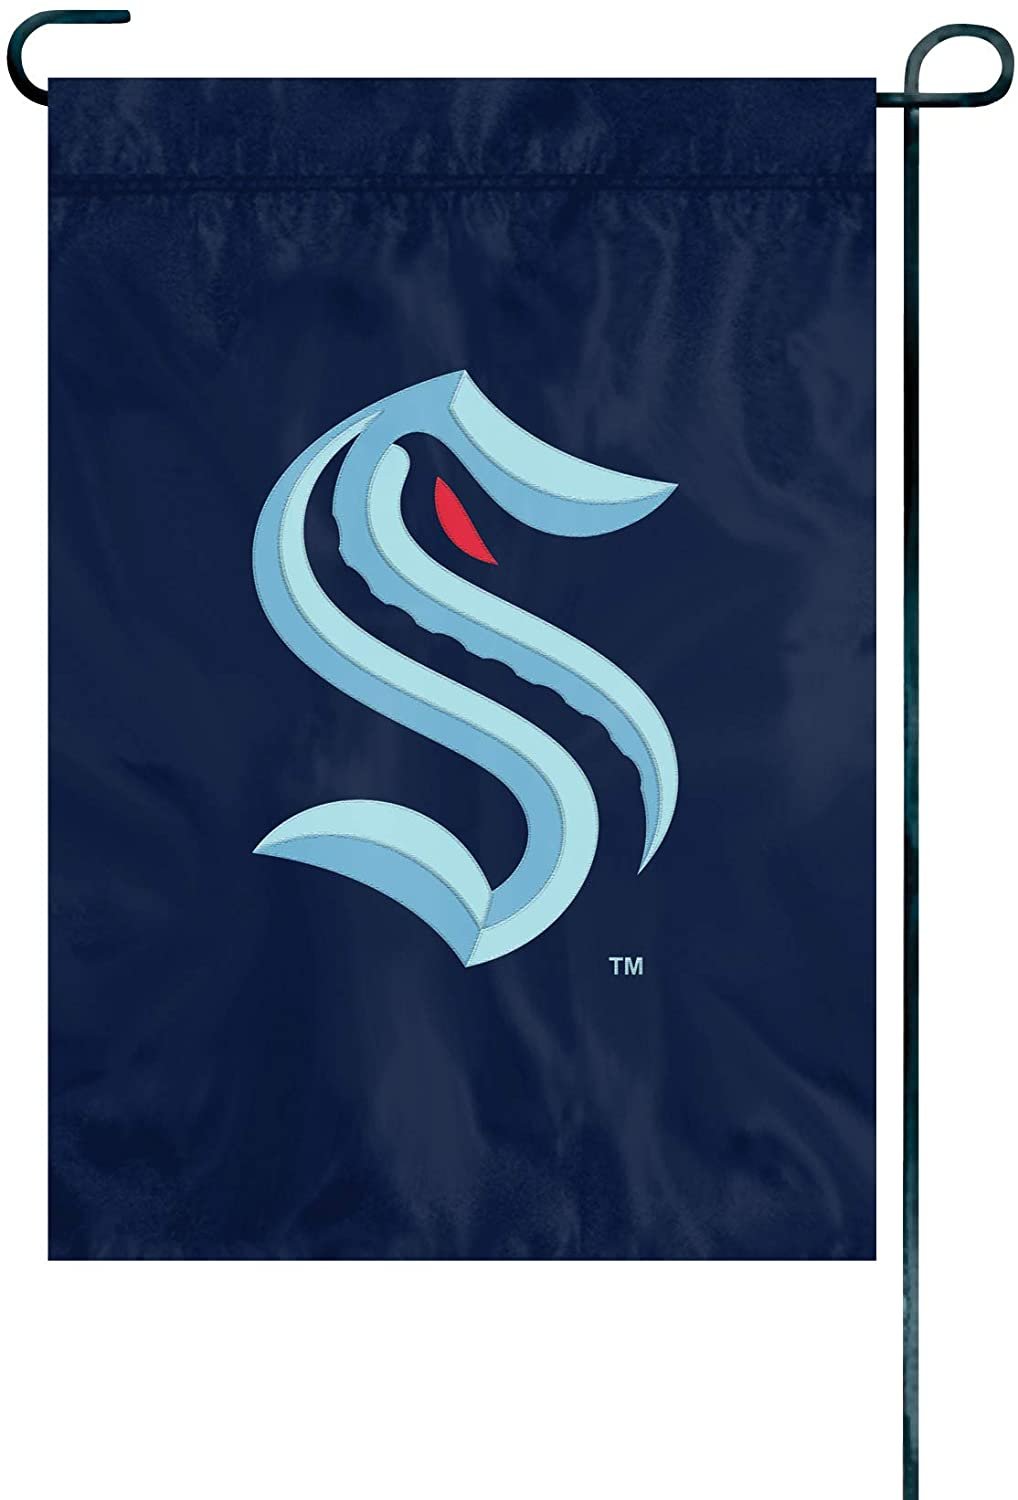 Seattle Kraken Premium Garden Flag Banner Applique Embroidered 12.5x18 Inch